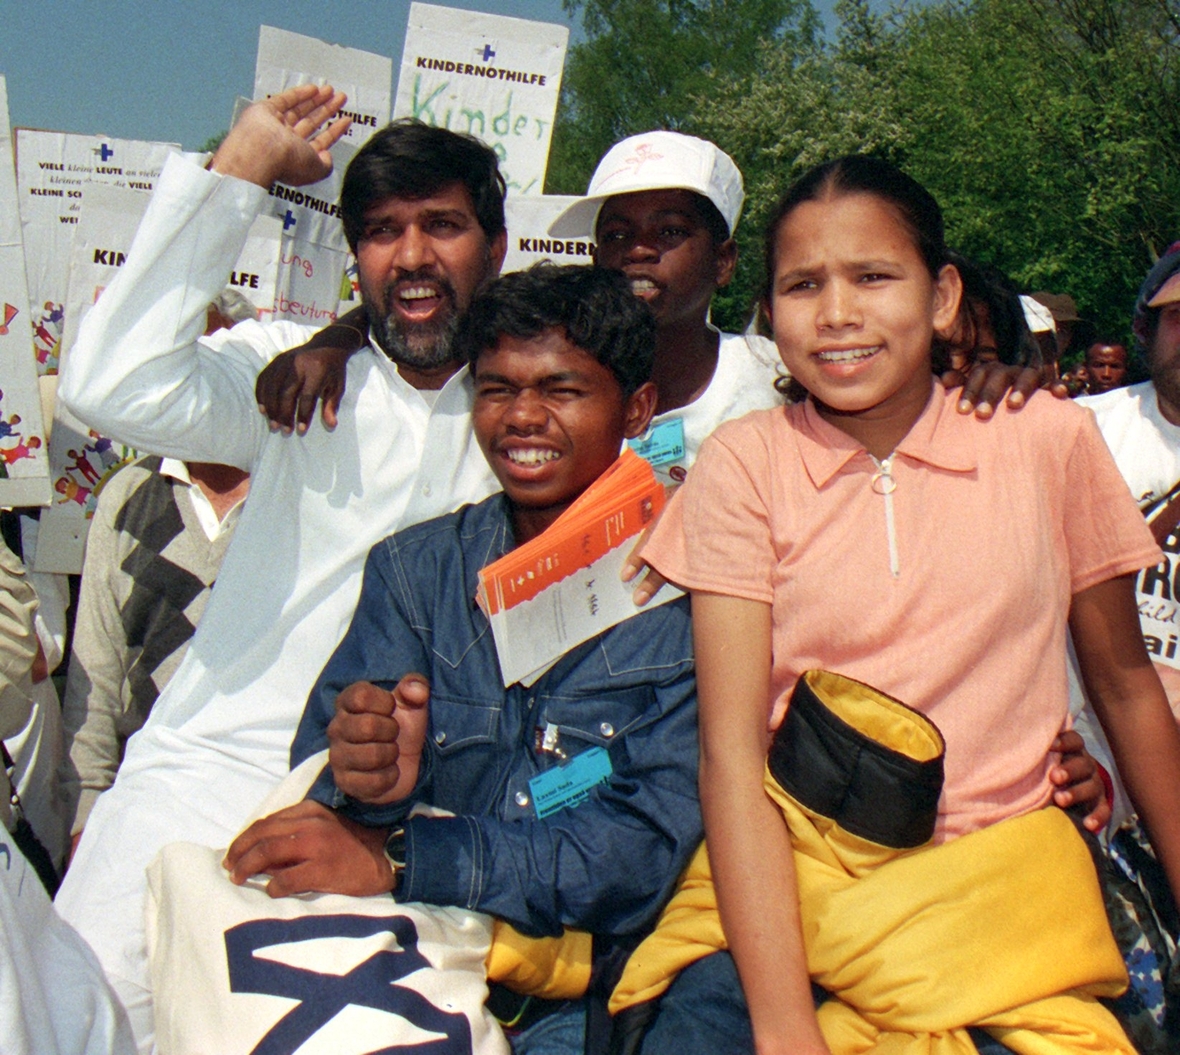 Gemeinsam stark – Demonstration gegen Kinderarbeit. Kailash Satyarthi (links) hatte am 10. Mai 1998 einen weltweite Aktion geplant.